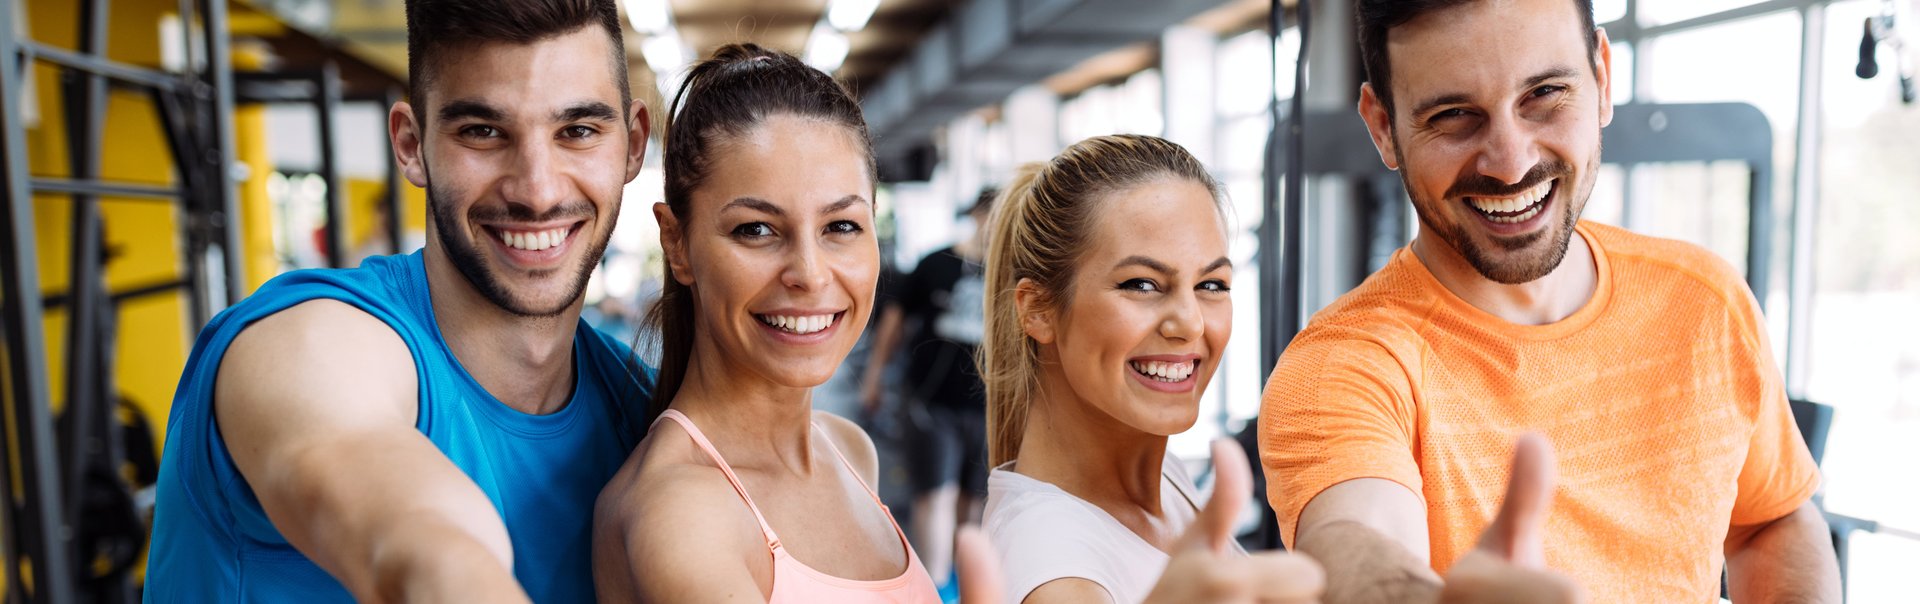 Vier junge Erwachsene stehen lächelnd in einem Fitnessstudio.